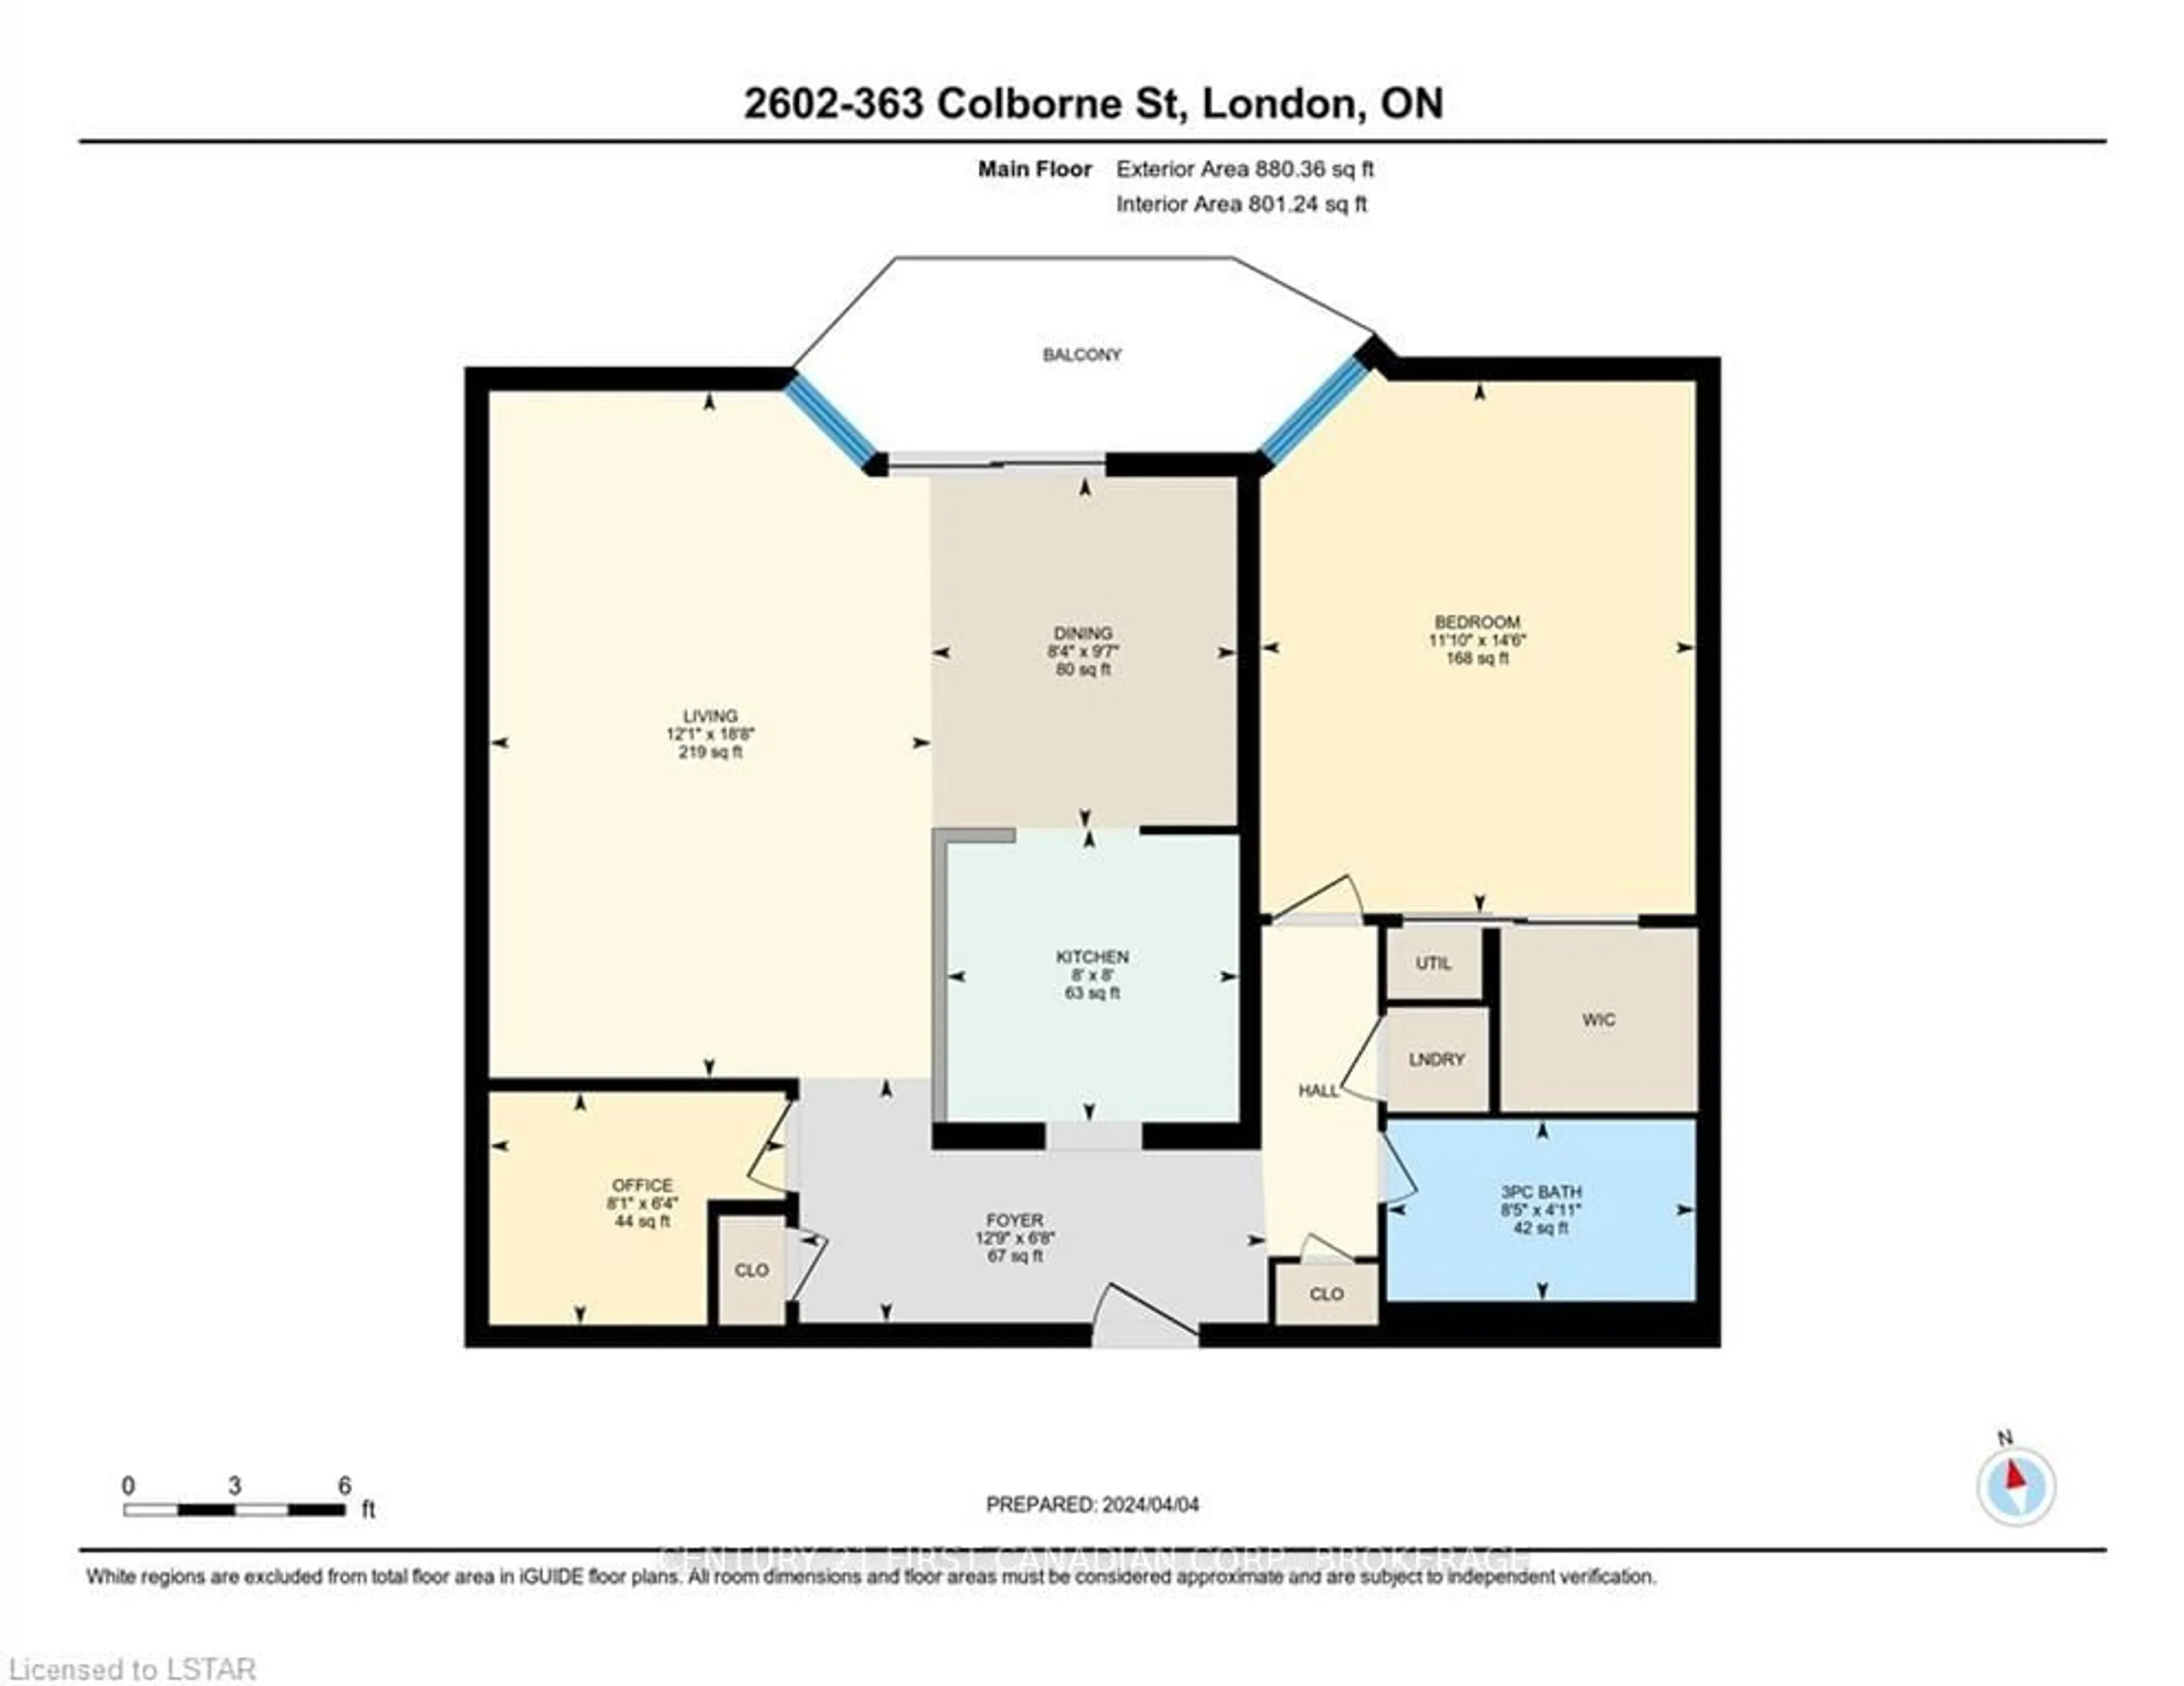 Floor plan for 363 Colborne St #2602, London Ontario N6B 3N3